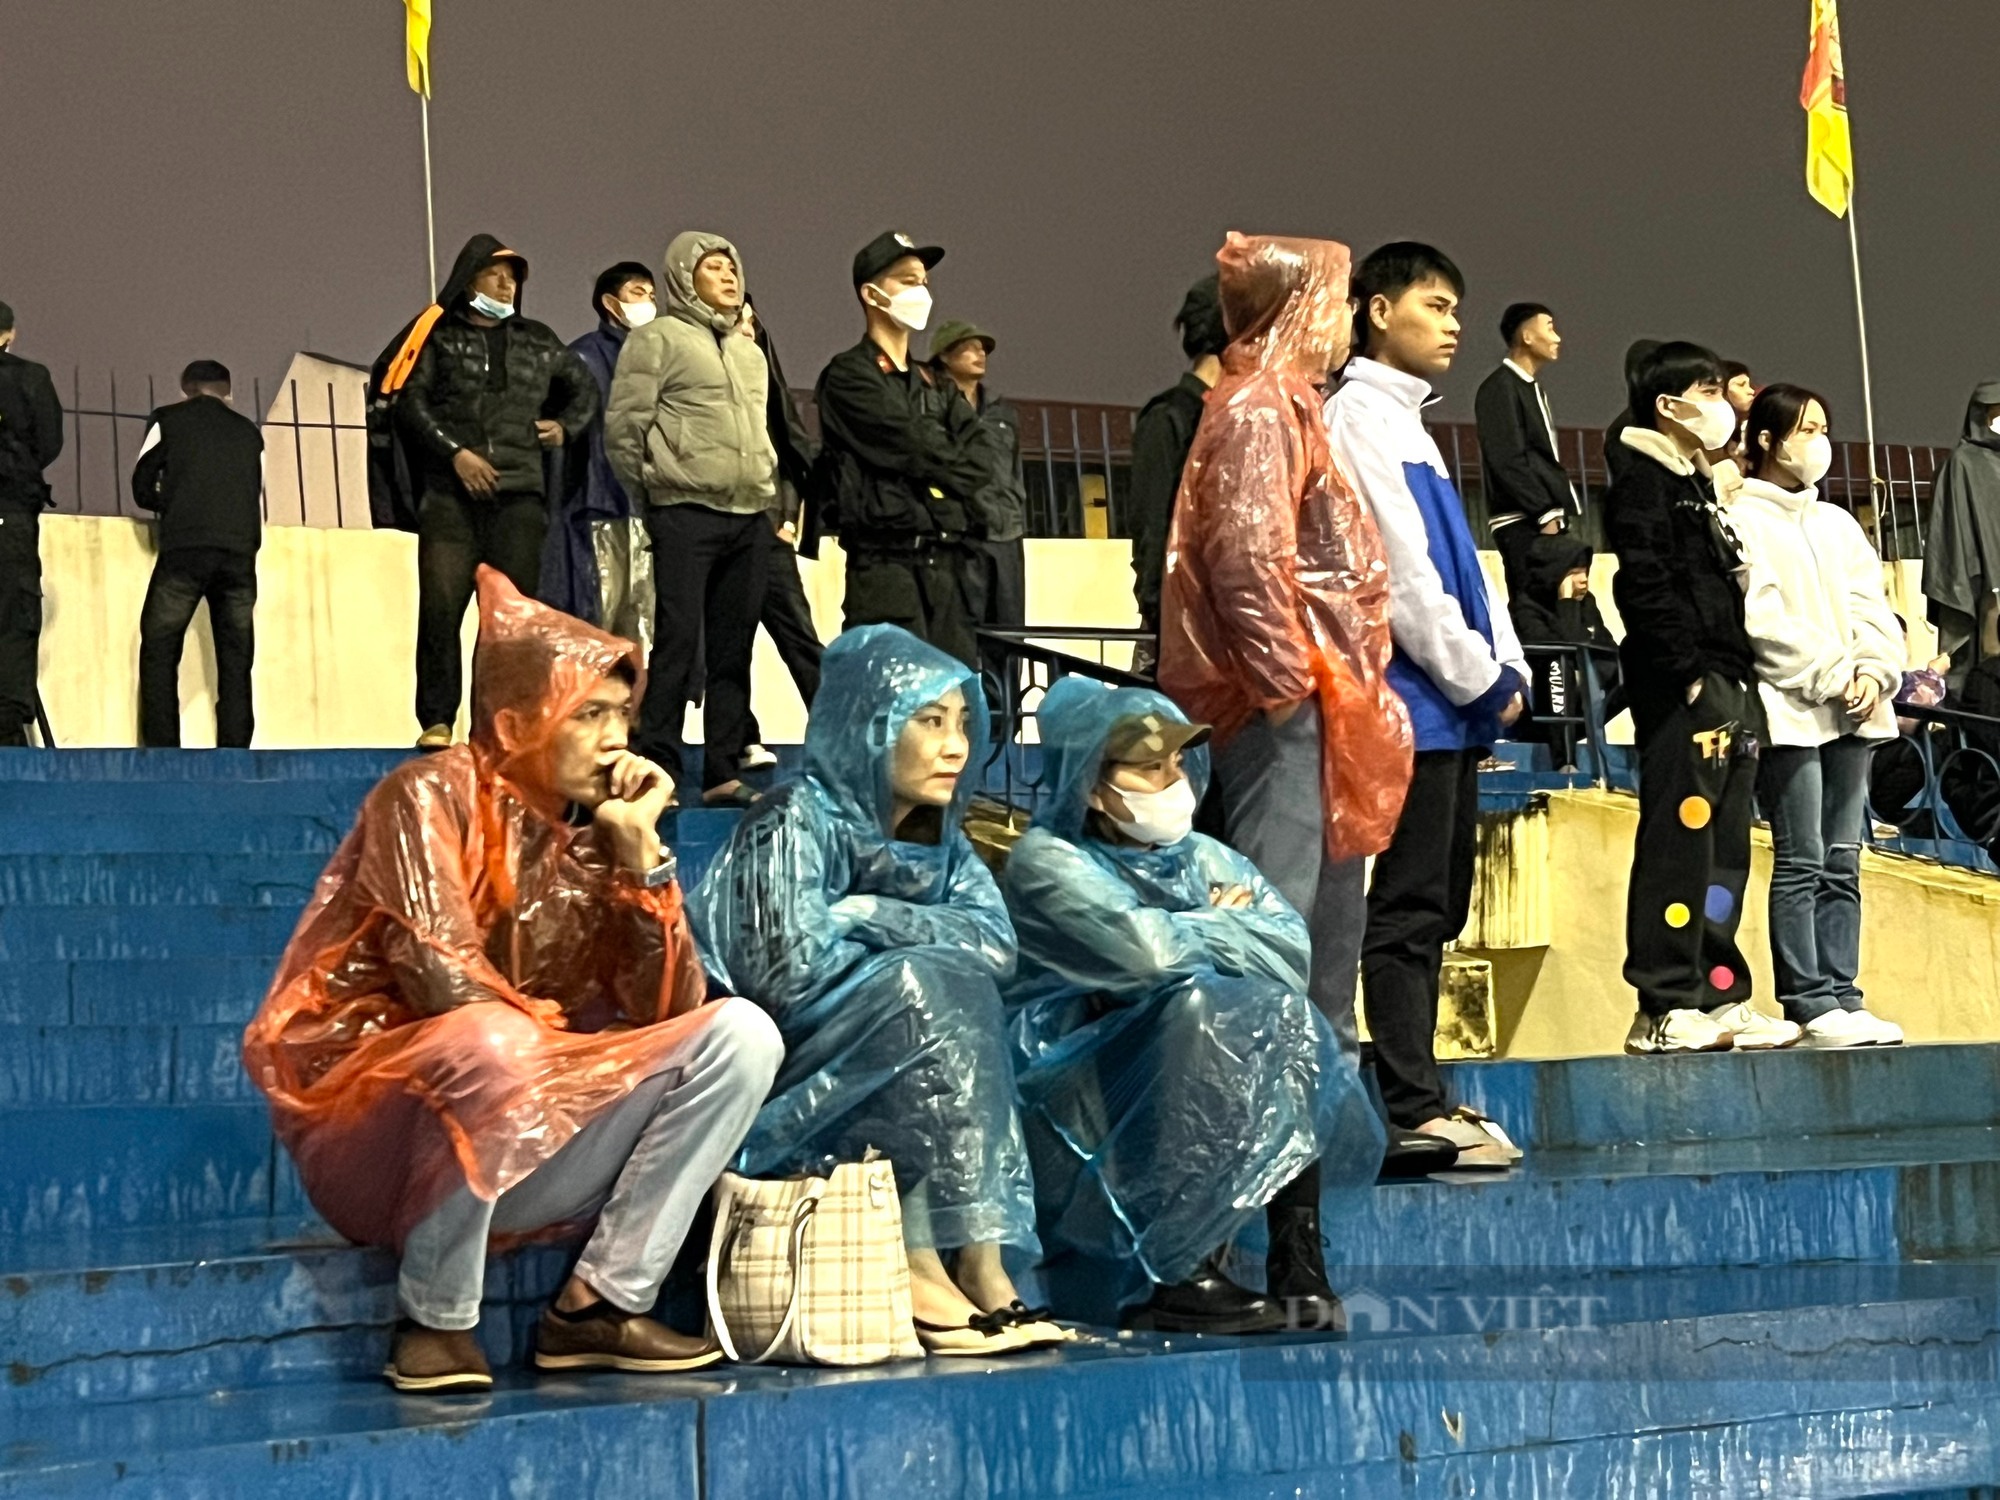 Cổ động viên Thanh Hoá đội mưa cổ vũ cho đội nhà - Ảnh 7.